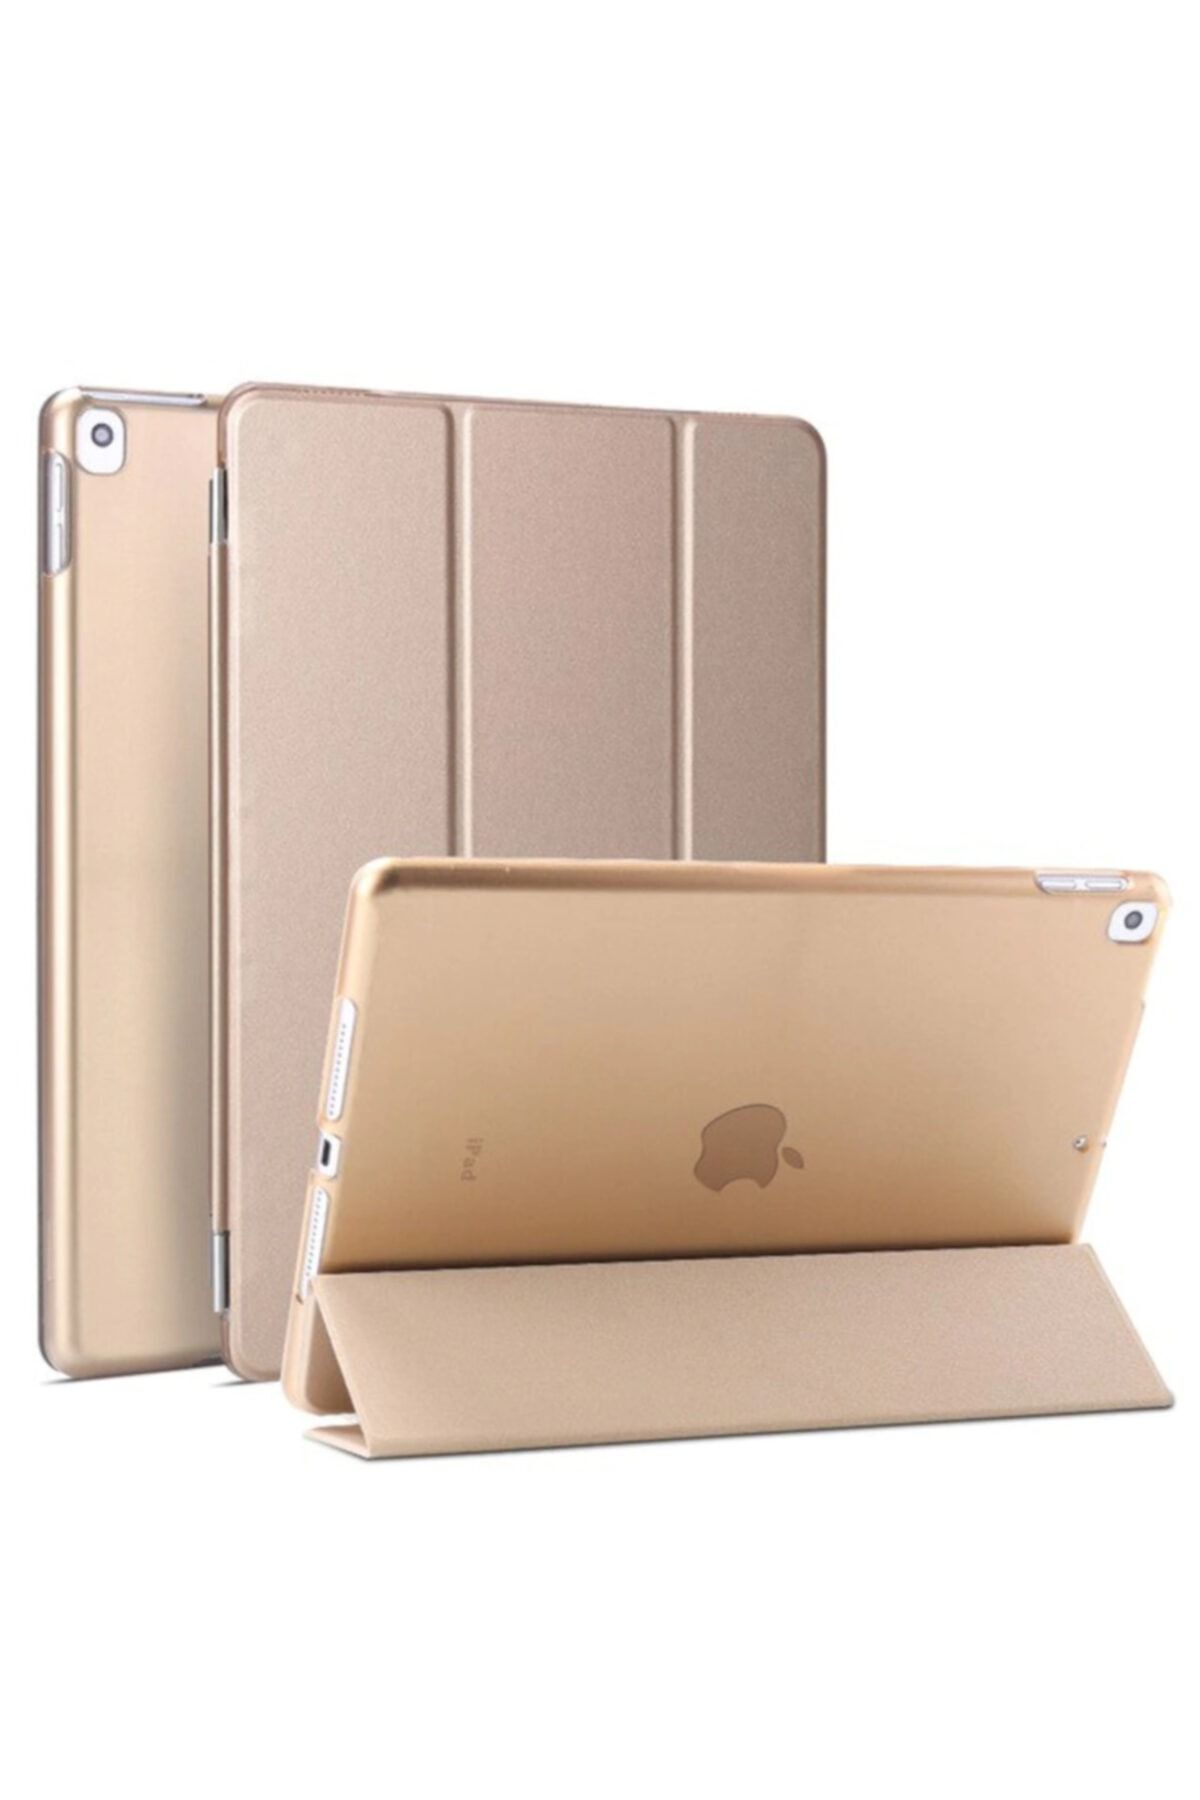 Fibaks Apple Ipad Air 2 (2014) 9.7" Kılıf Smart Cover Katlanabilir Standlı Akıllı Kapak